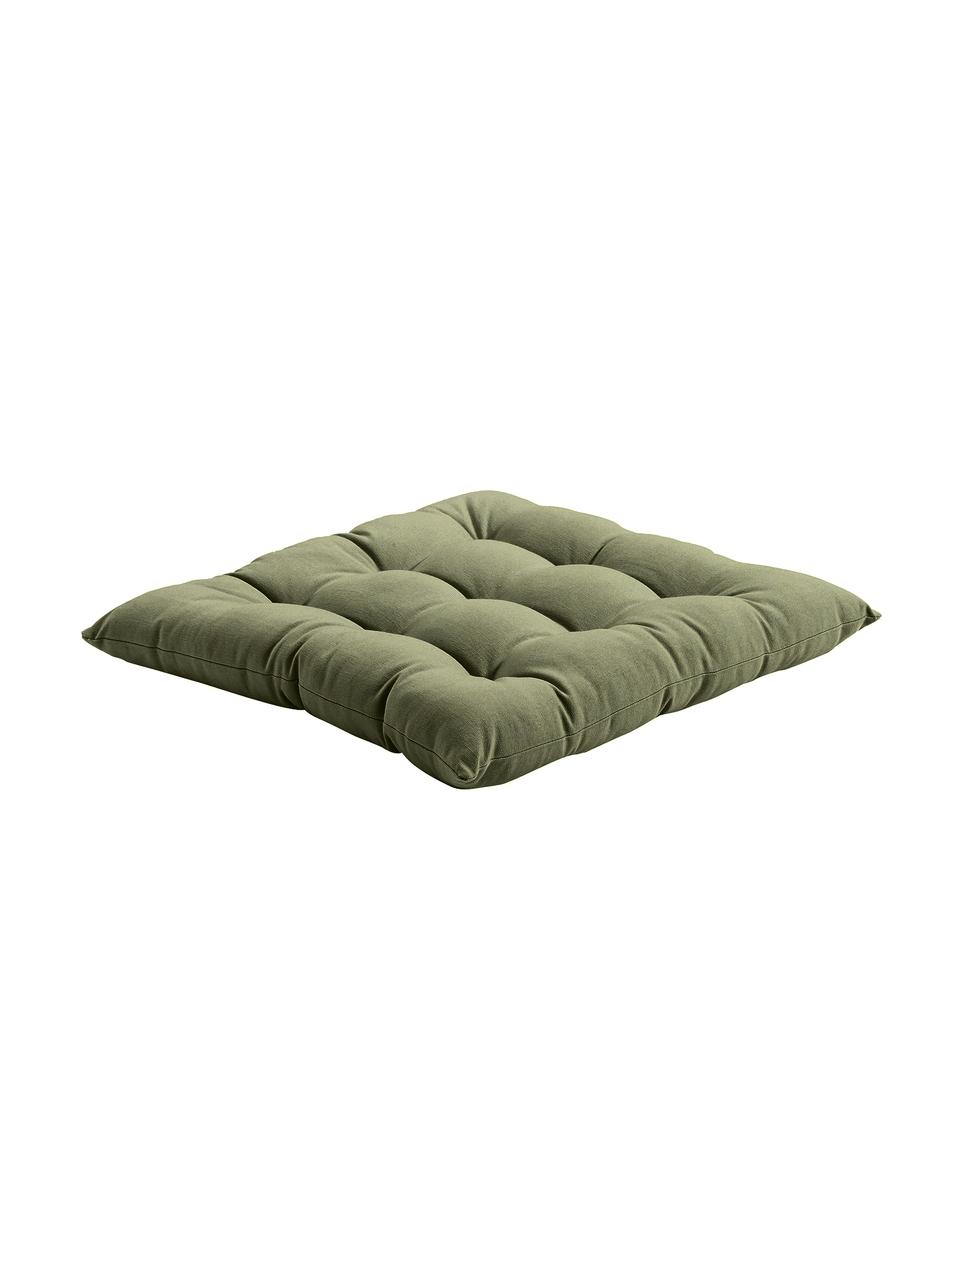 Poduszka na krzesło z bawełny Ava, Oliwkowy zielony, S 40 x D 40 cm